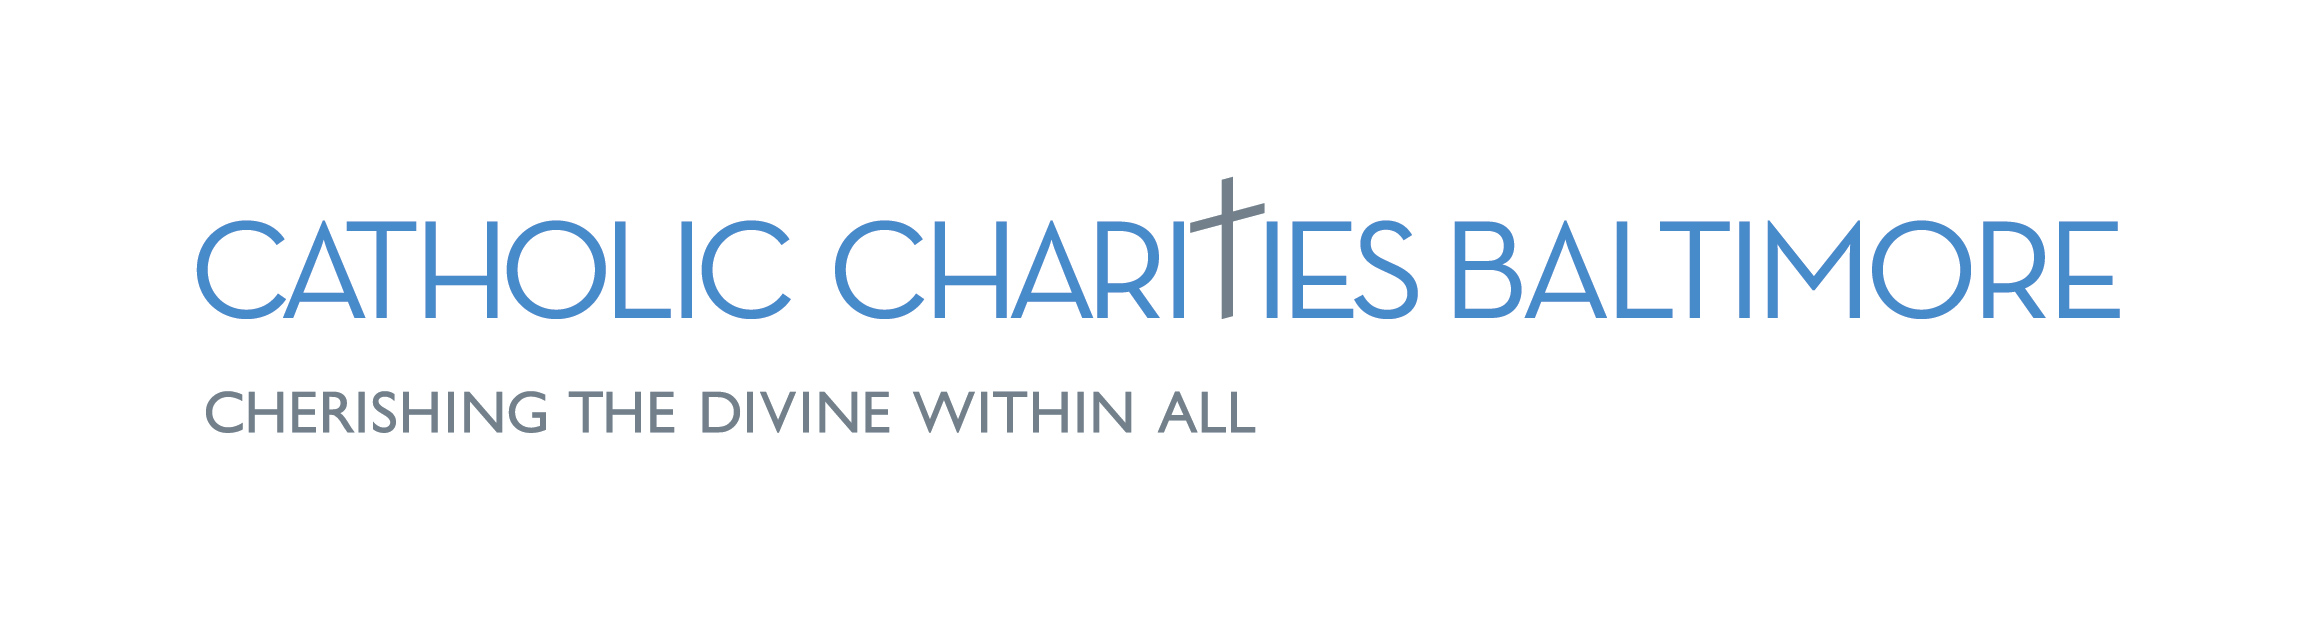 Catholic Charities of Baltimore logo